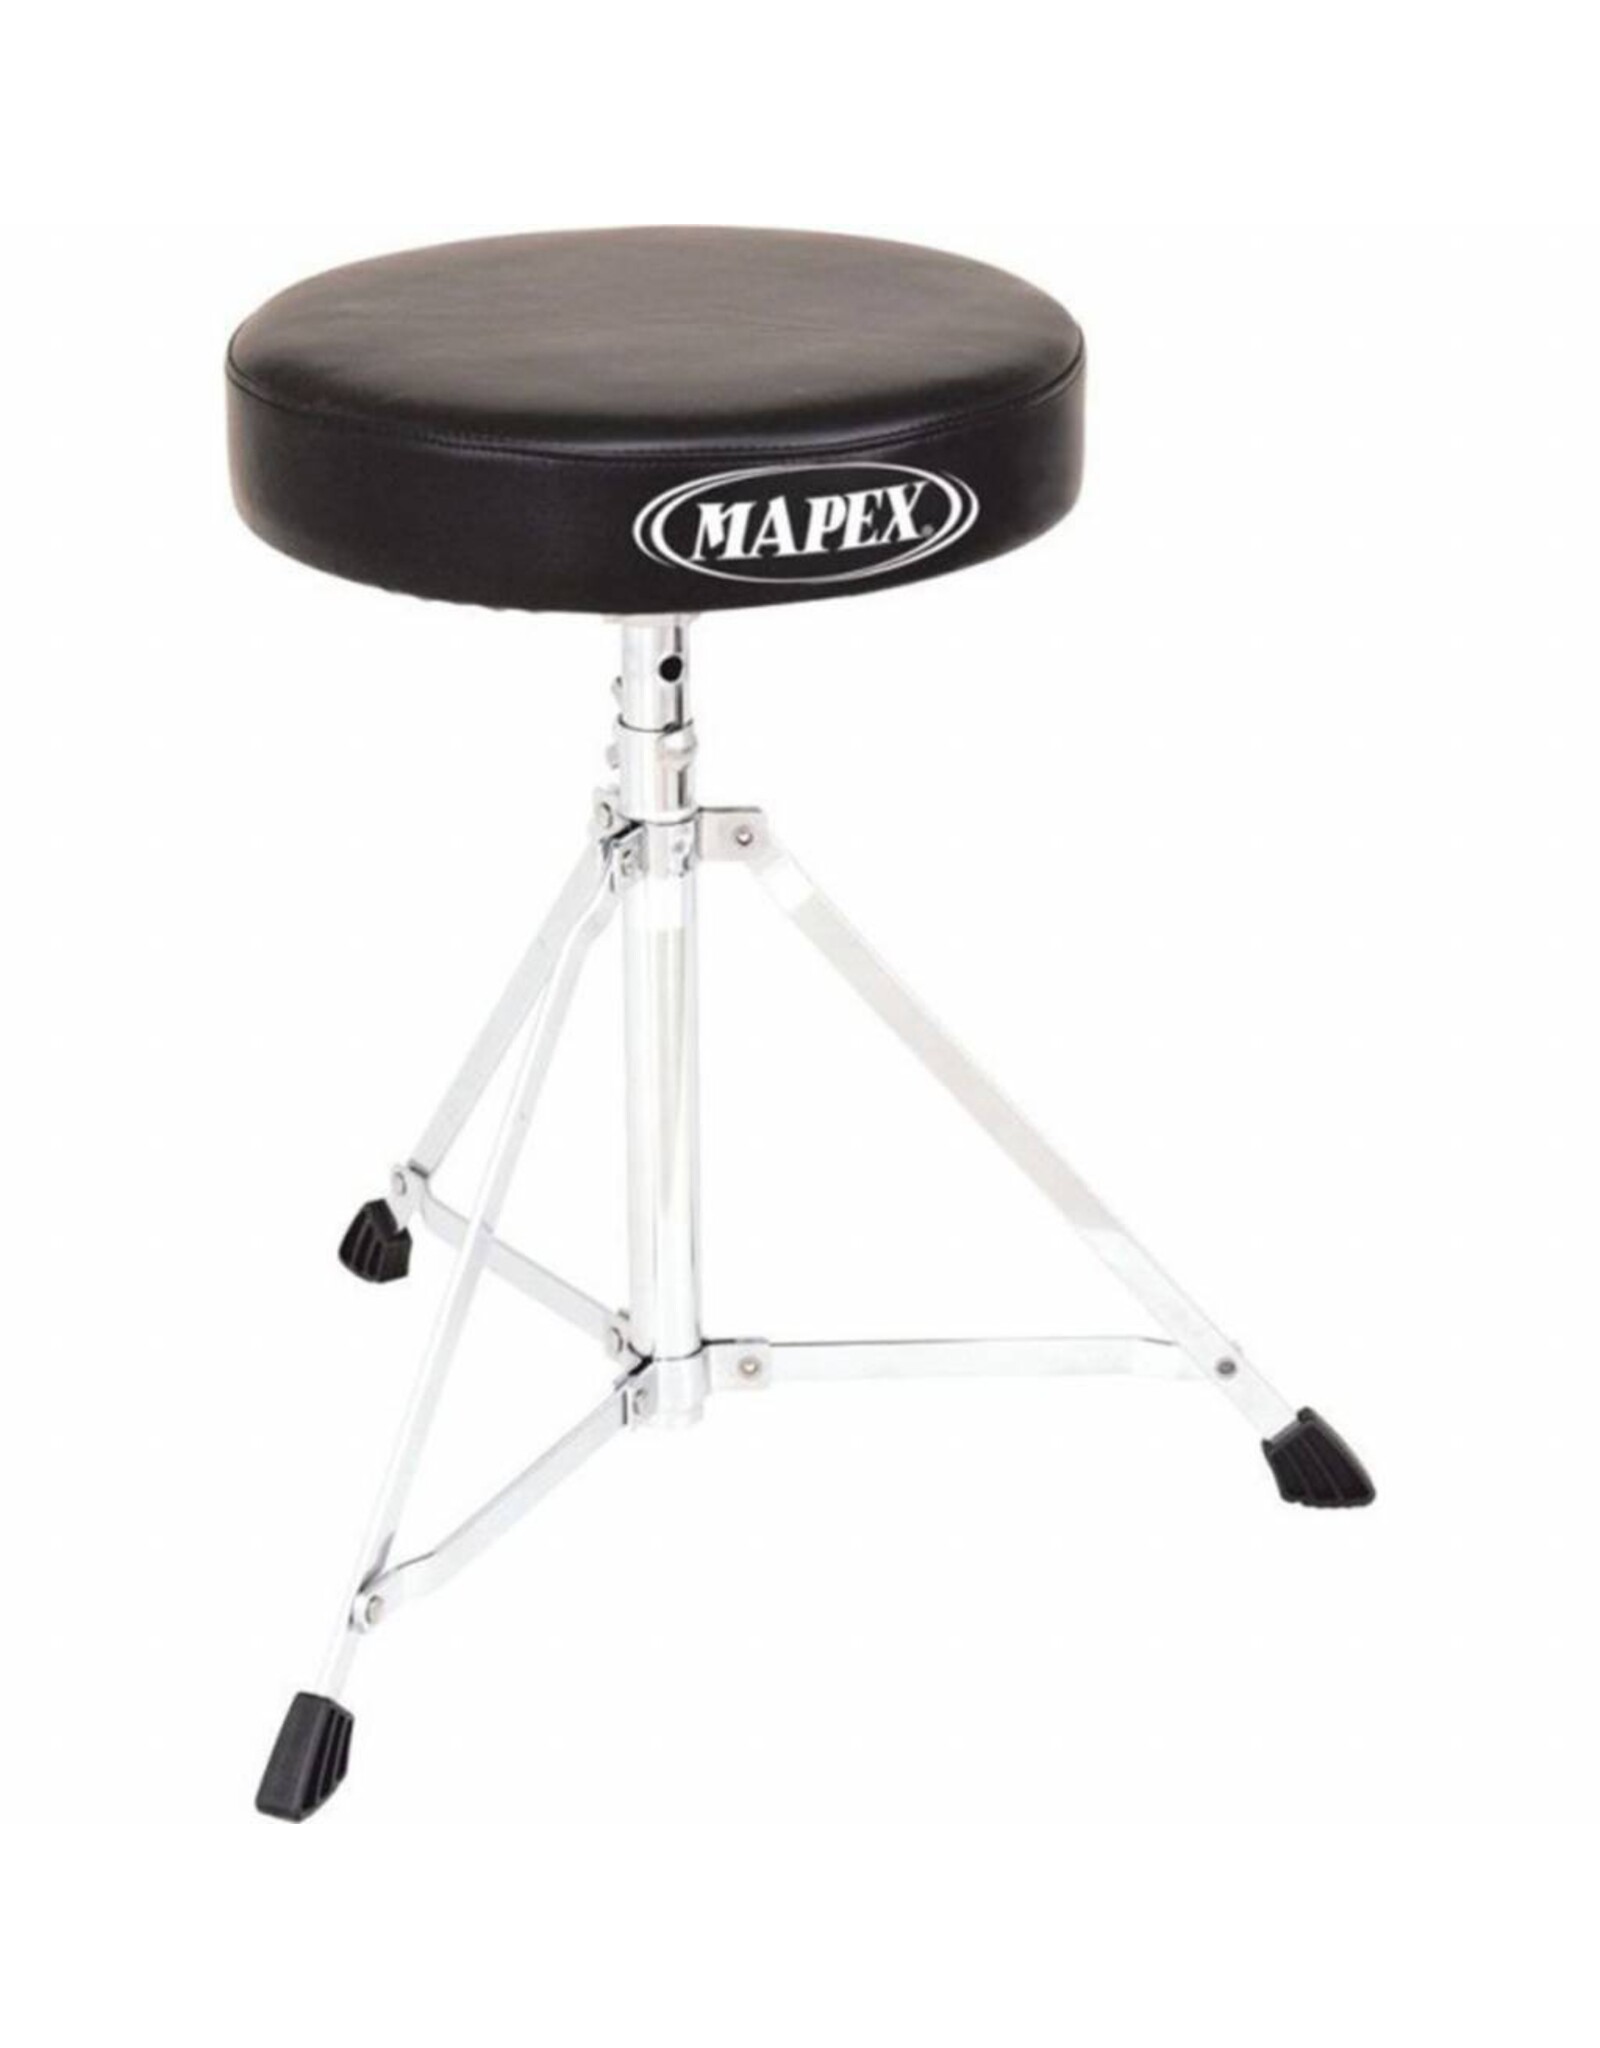 Mapex Mapex T250 drumkruk